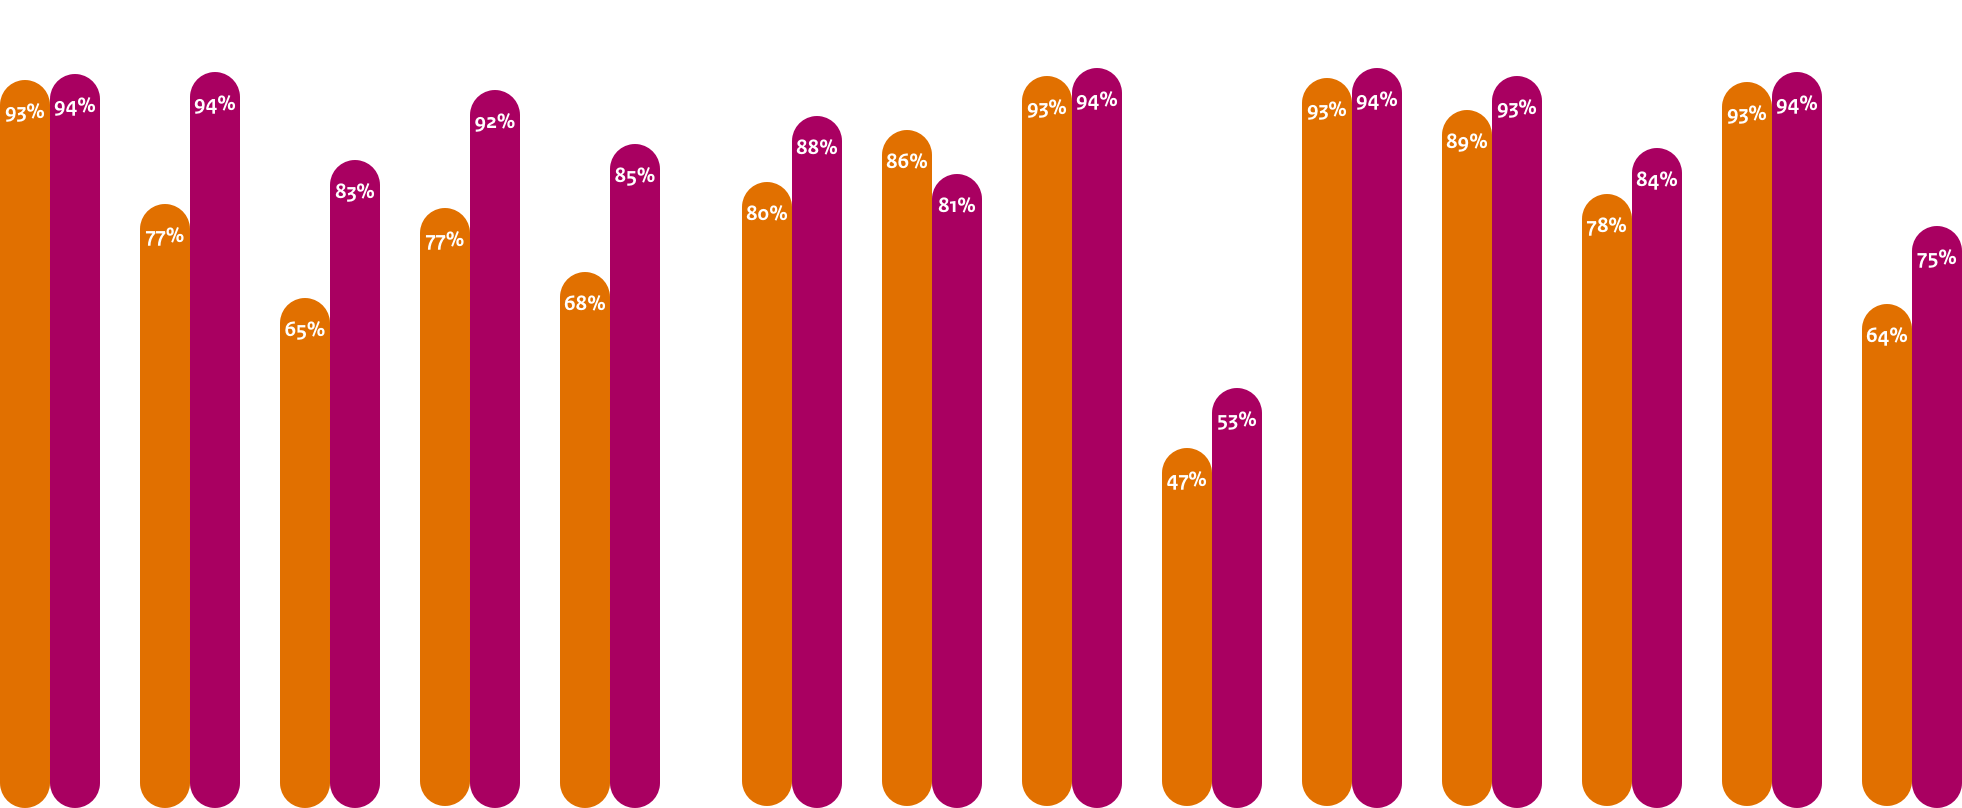 Gemiddelde adoptie webstandaarden Rijk
Begin 2019 en medio 2019
DNSSEC: 93%, 94%
TLS: 77%, 94%
TLS NCSC: 65%, 83%
HTTPS: 77%, 92%
HSTS: 68%, 85%

Gemiddelde adoptie mailstandaarden Anti-phishing Rijk
Begin 2019 en medio 2019
DMARC: 80%, 88%
DKIM: 86%, 81%
SPF: 93%, 94%
DMARC Policy: 47%, 53%
SPF Policy: 93%, 94%
START TLS: 89%, 93%
START TLS NCSC: 78%, 84%
DNSSEC MX: 93%, 94%
DANE: 64%, 75%